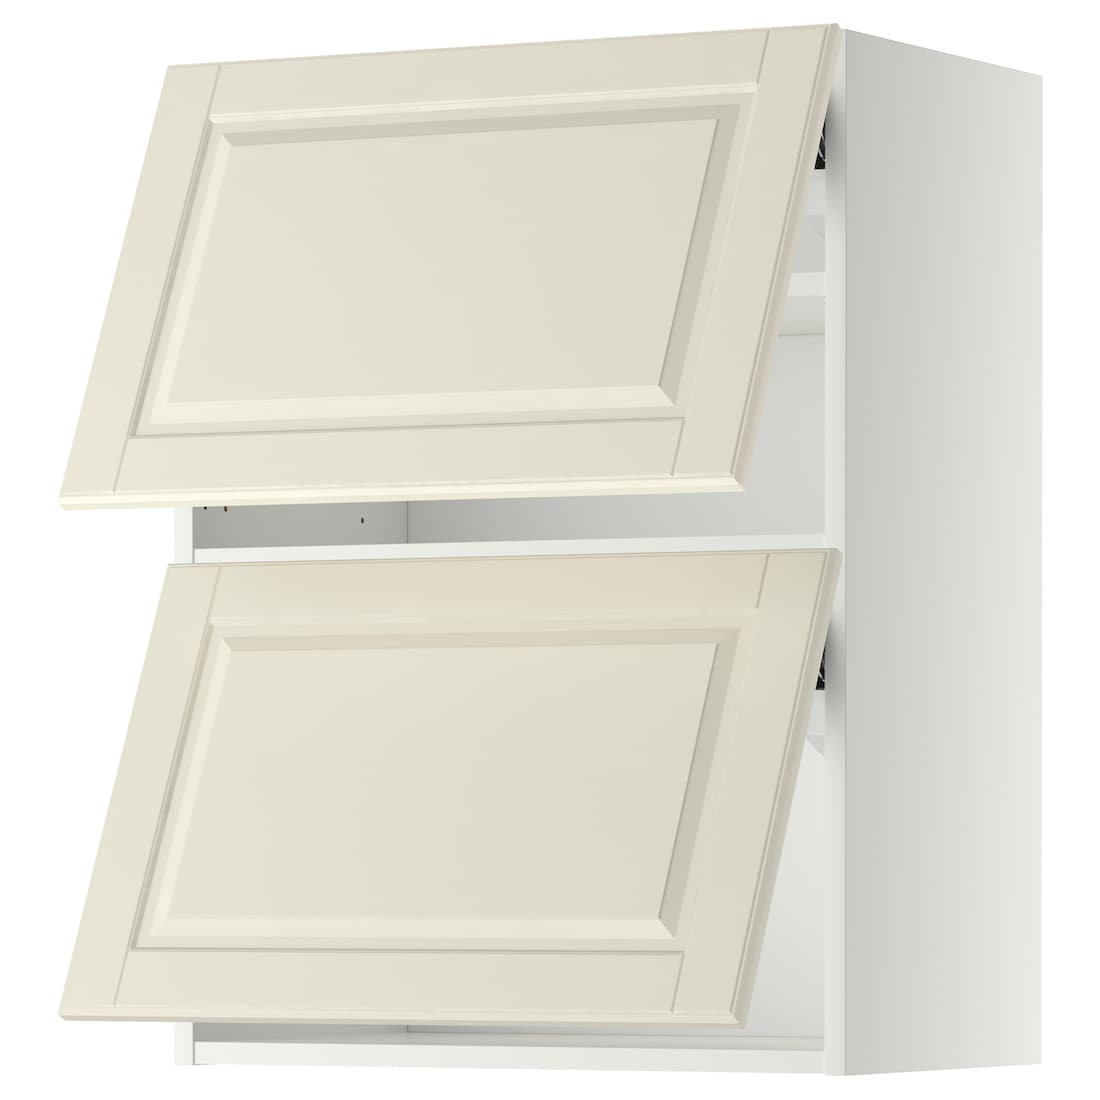 METOD МЕТОД Навесной горизонтальный шкаф / 2 двери, белый / Bodbyn кремовый, 60x80 см